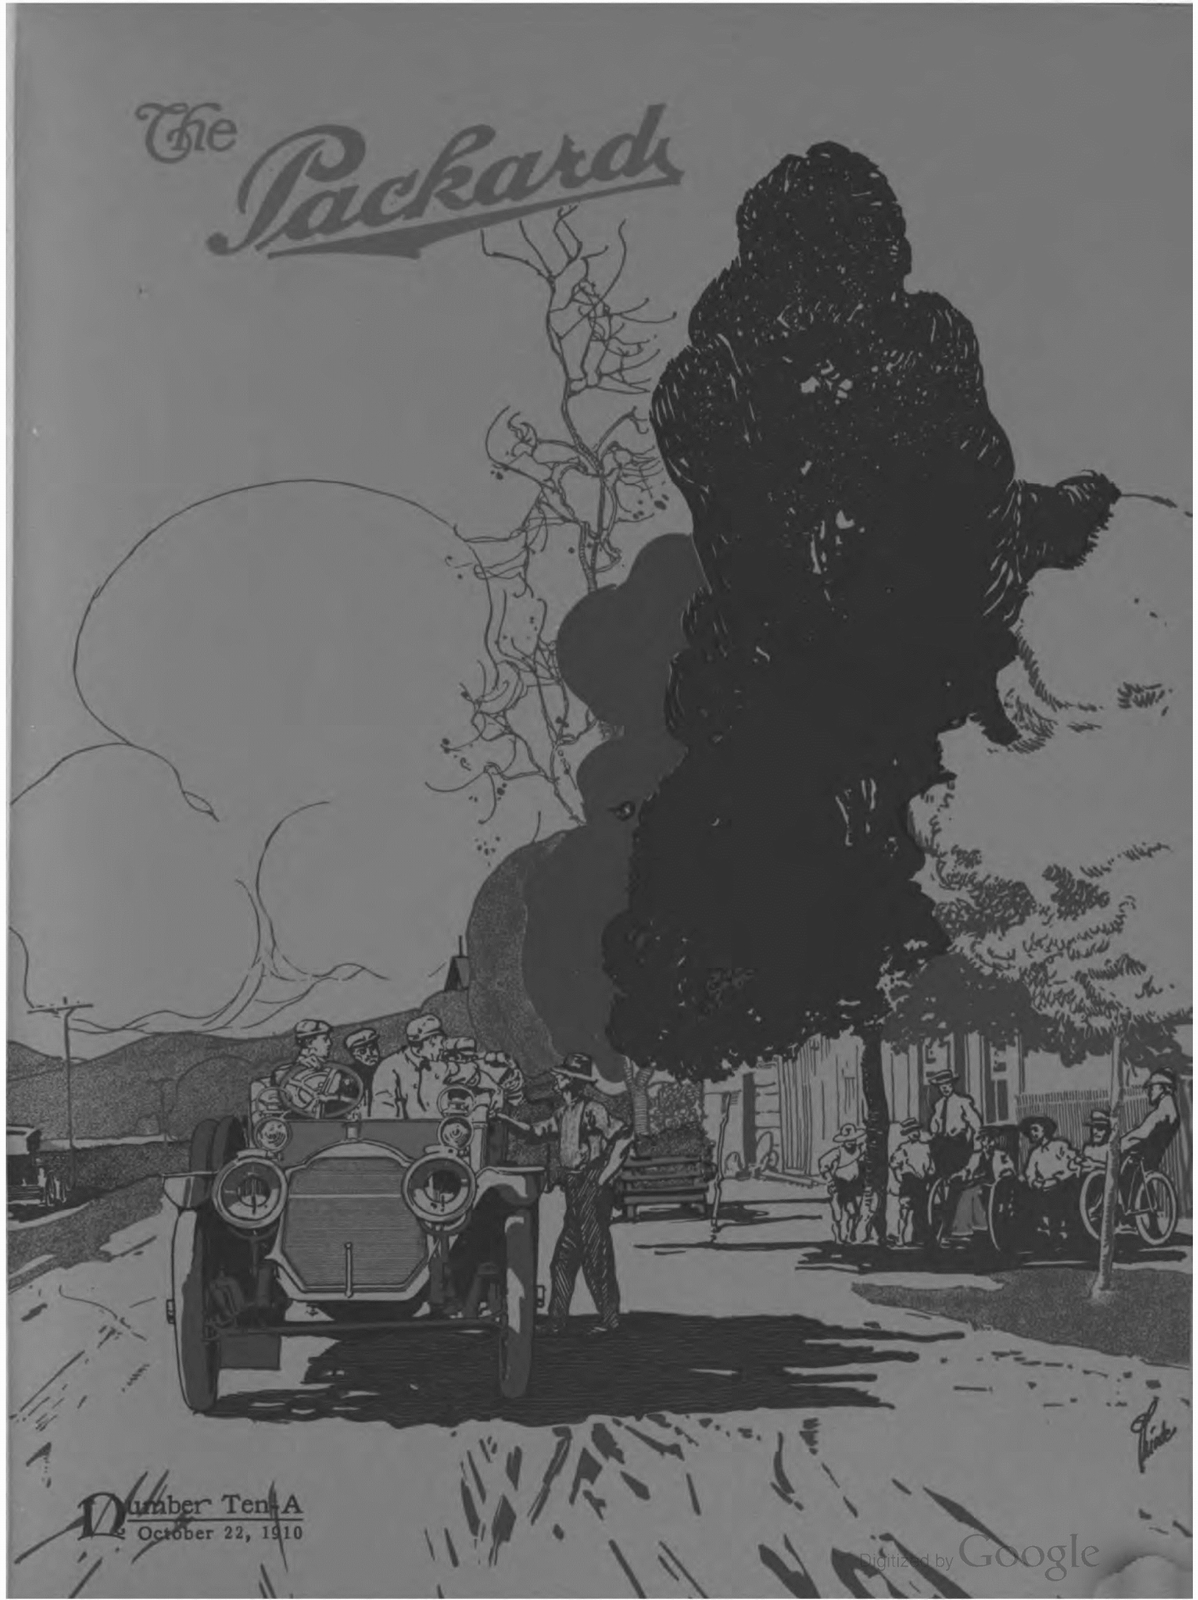 n_1910 'The Packard' Newsletter-181.jpg